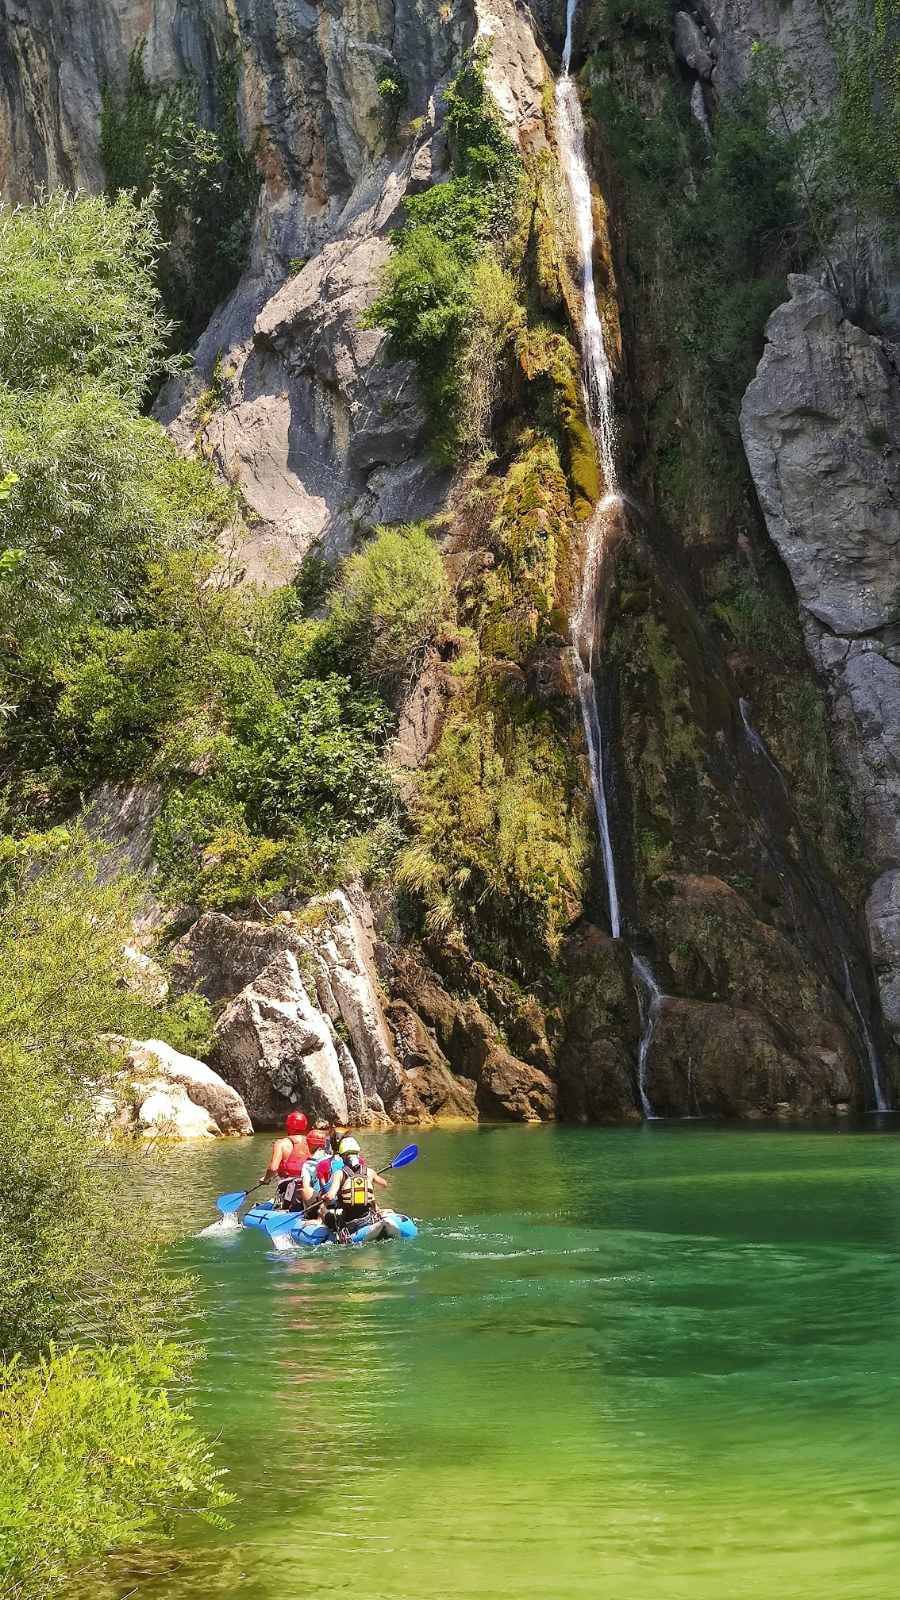 Turist se onesvijestio u kanjonu Cetine: Spustili ga niz stijenu visine 15 metara i predali Hitnoj